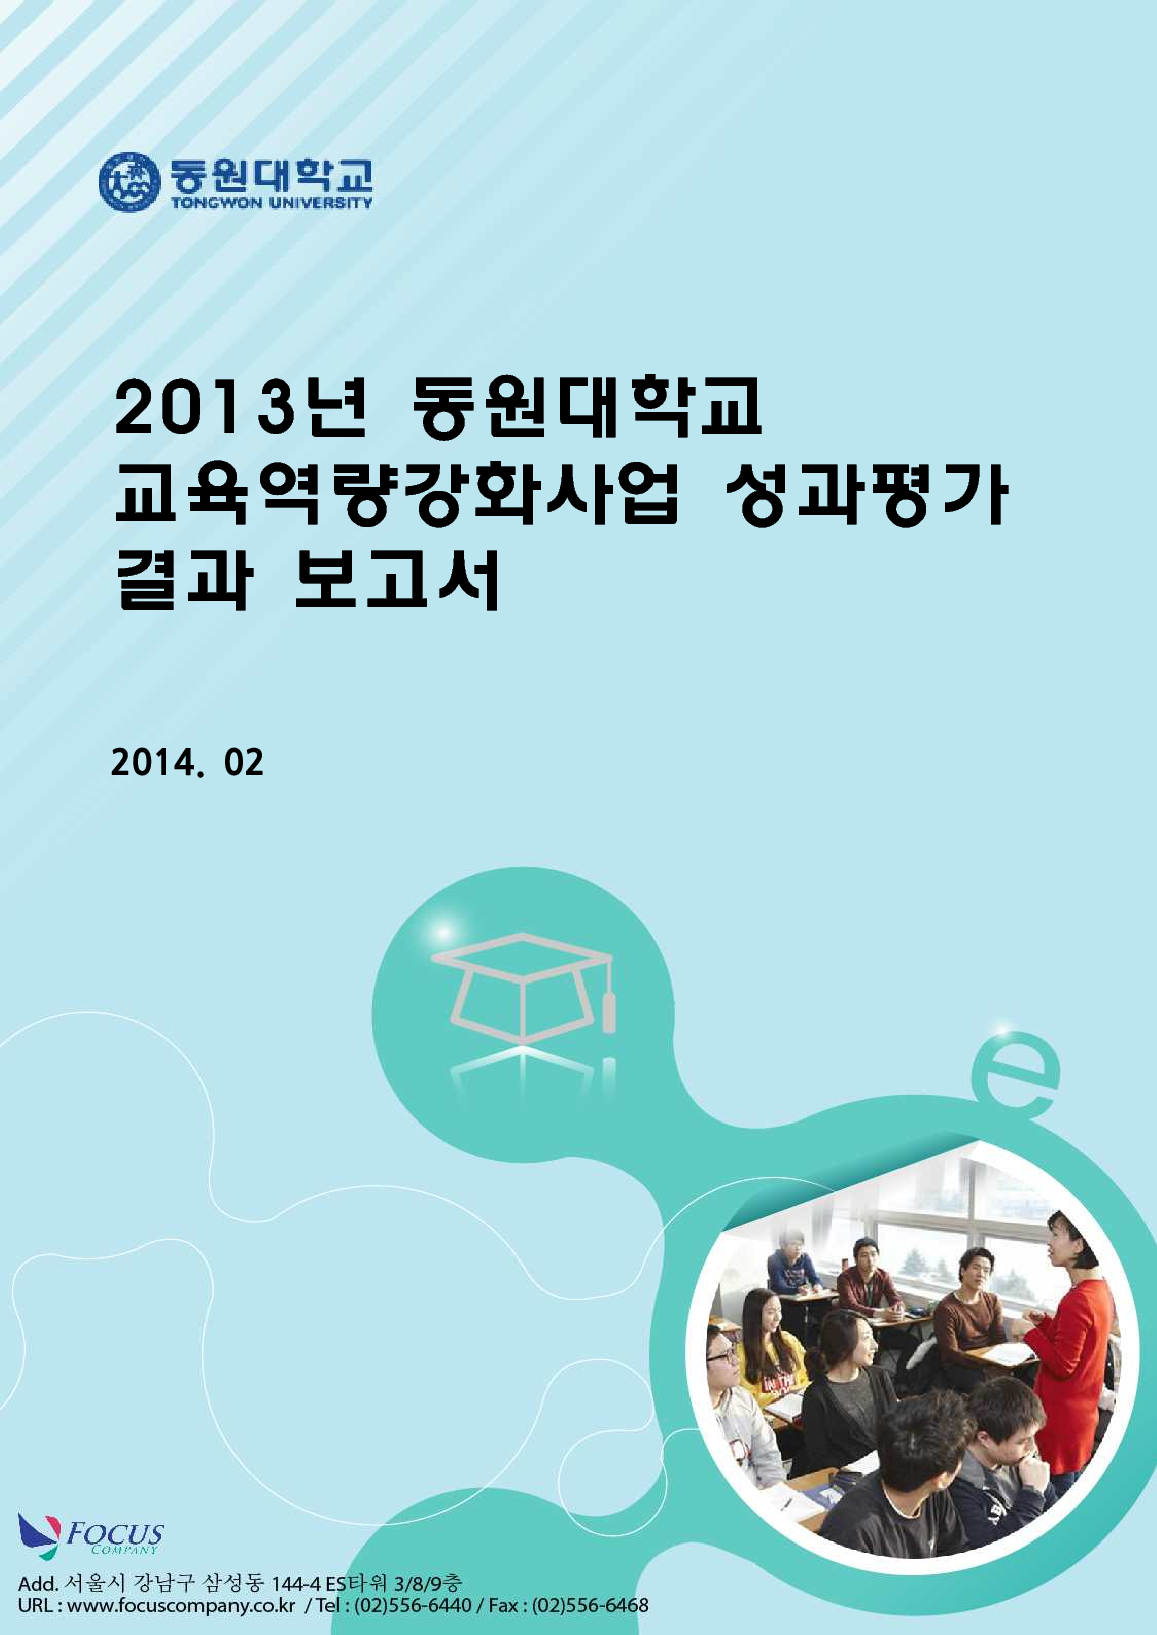 2013년 동원대학교 교육역량강화사업 성과평가 결과 보고서